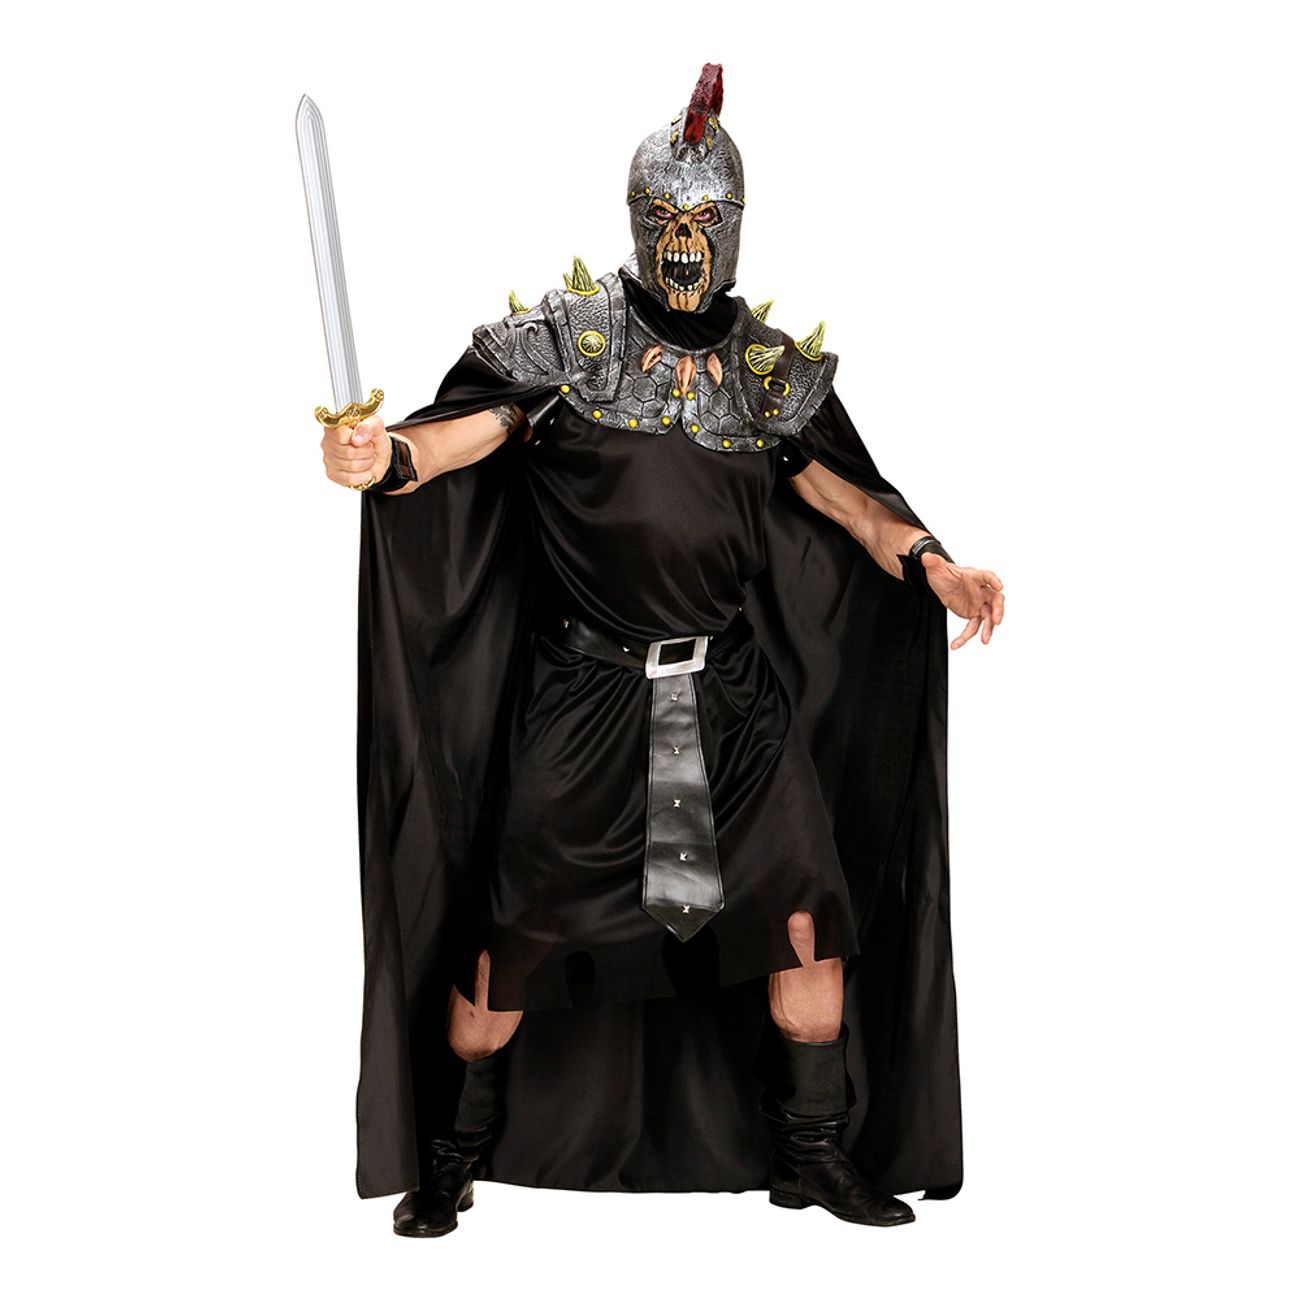 romersk-krigare-zombie-maskeraddrakt-1